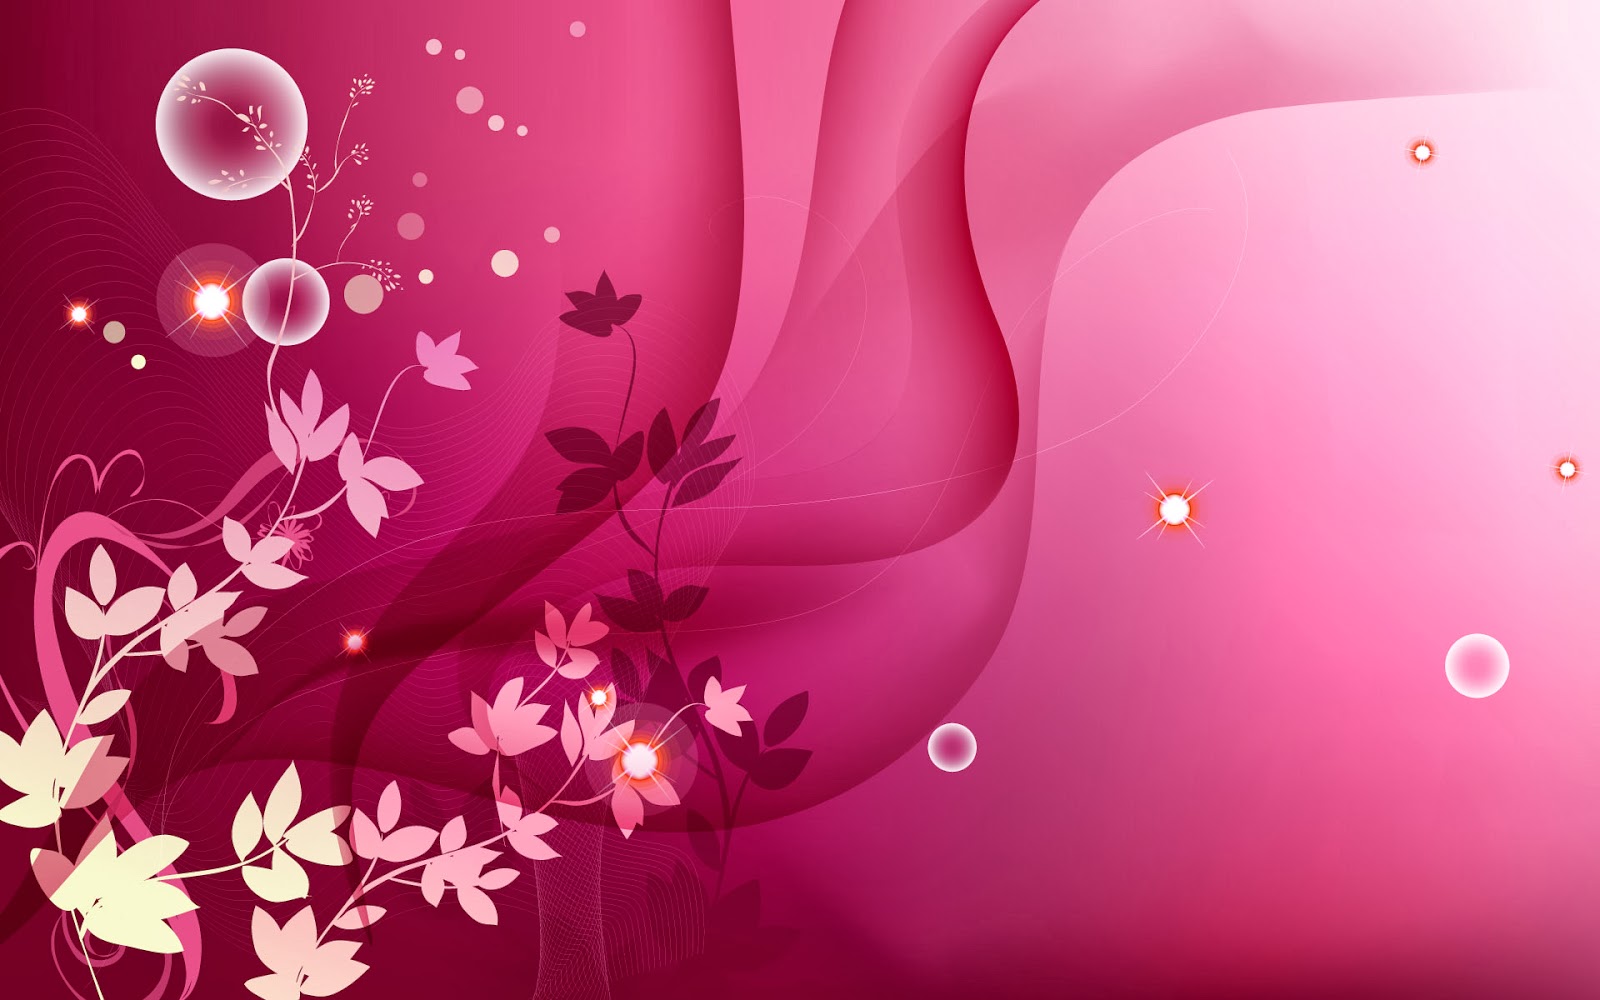 ガンバル壁紙愛,ピンク,紫の,壁紙,花弁,グラフィックデザイン